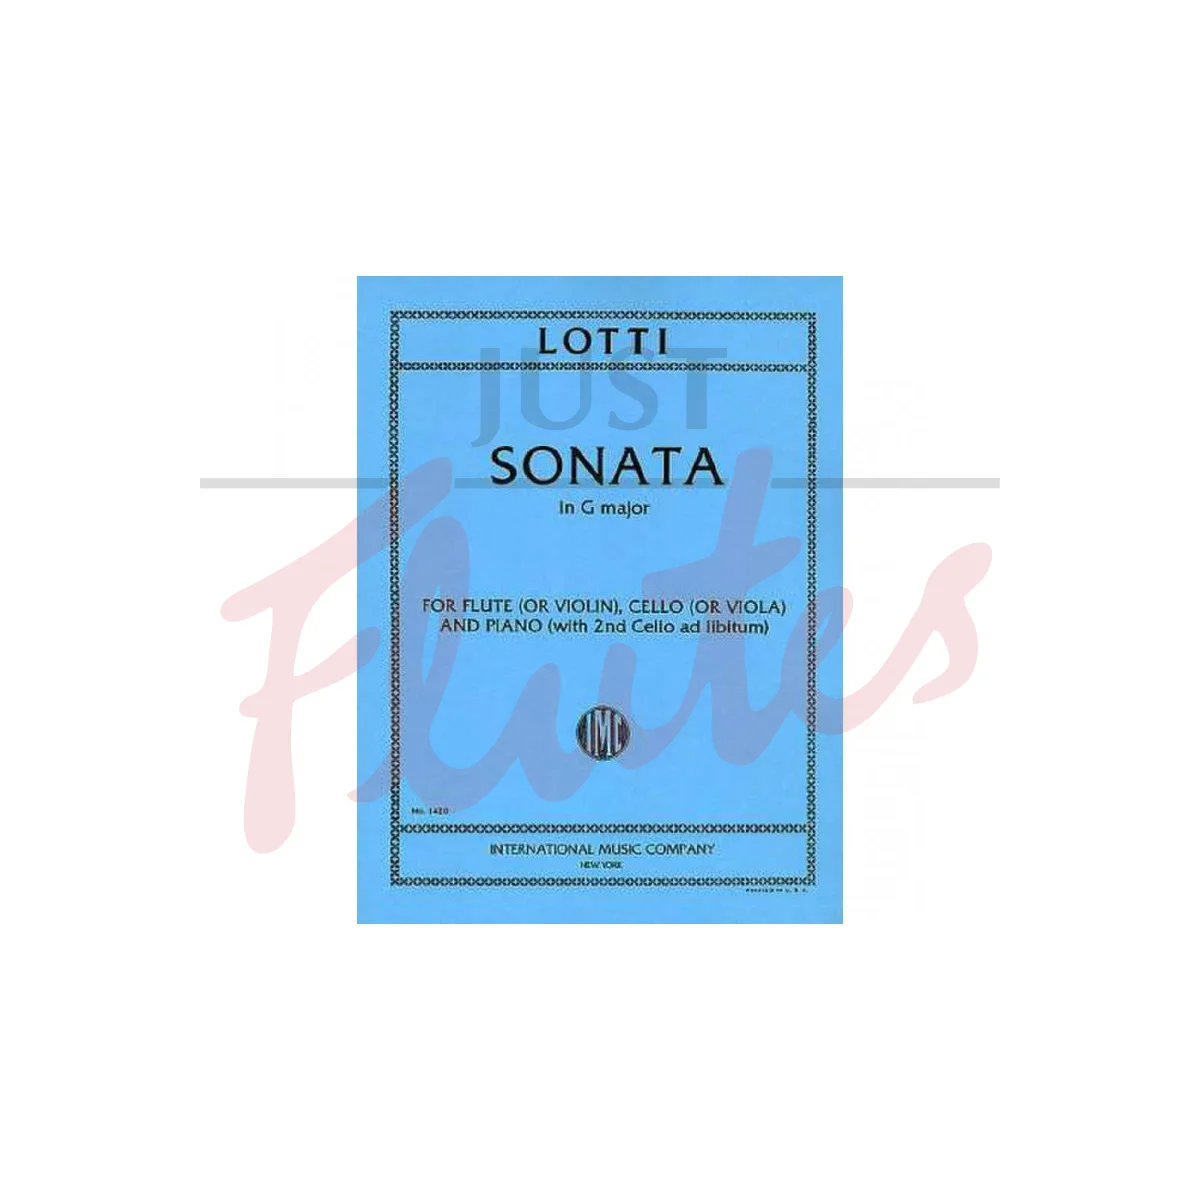 Sonata in G major for Flute/Violin, Cello/Viola and Piano